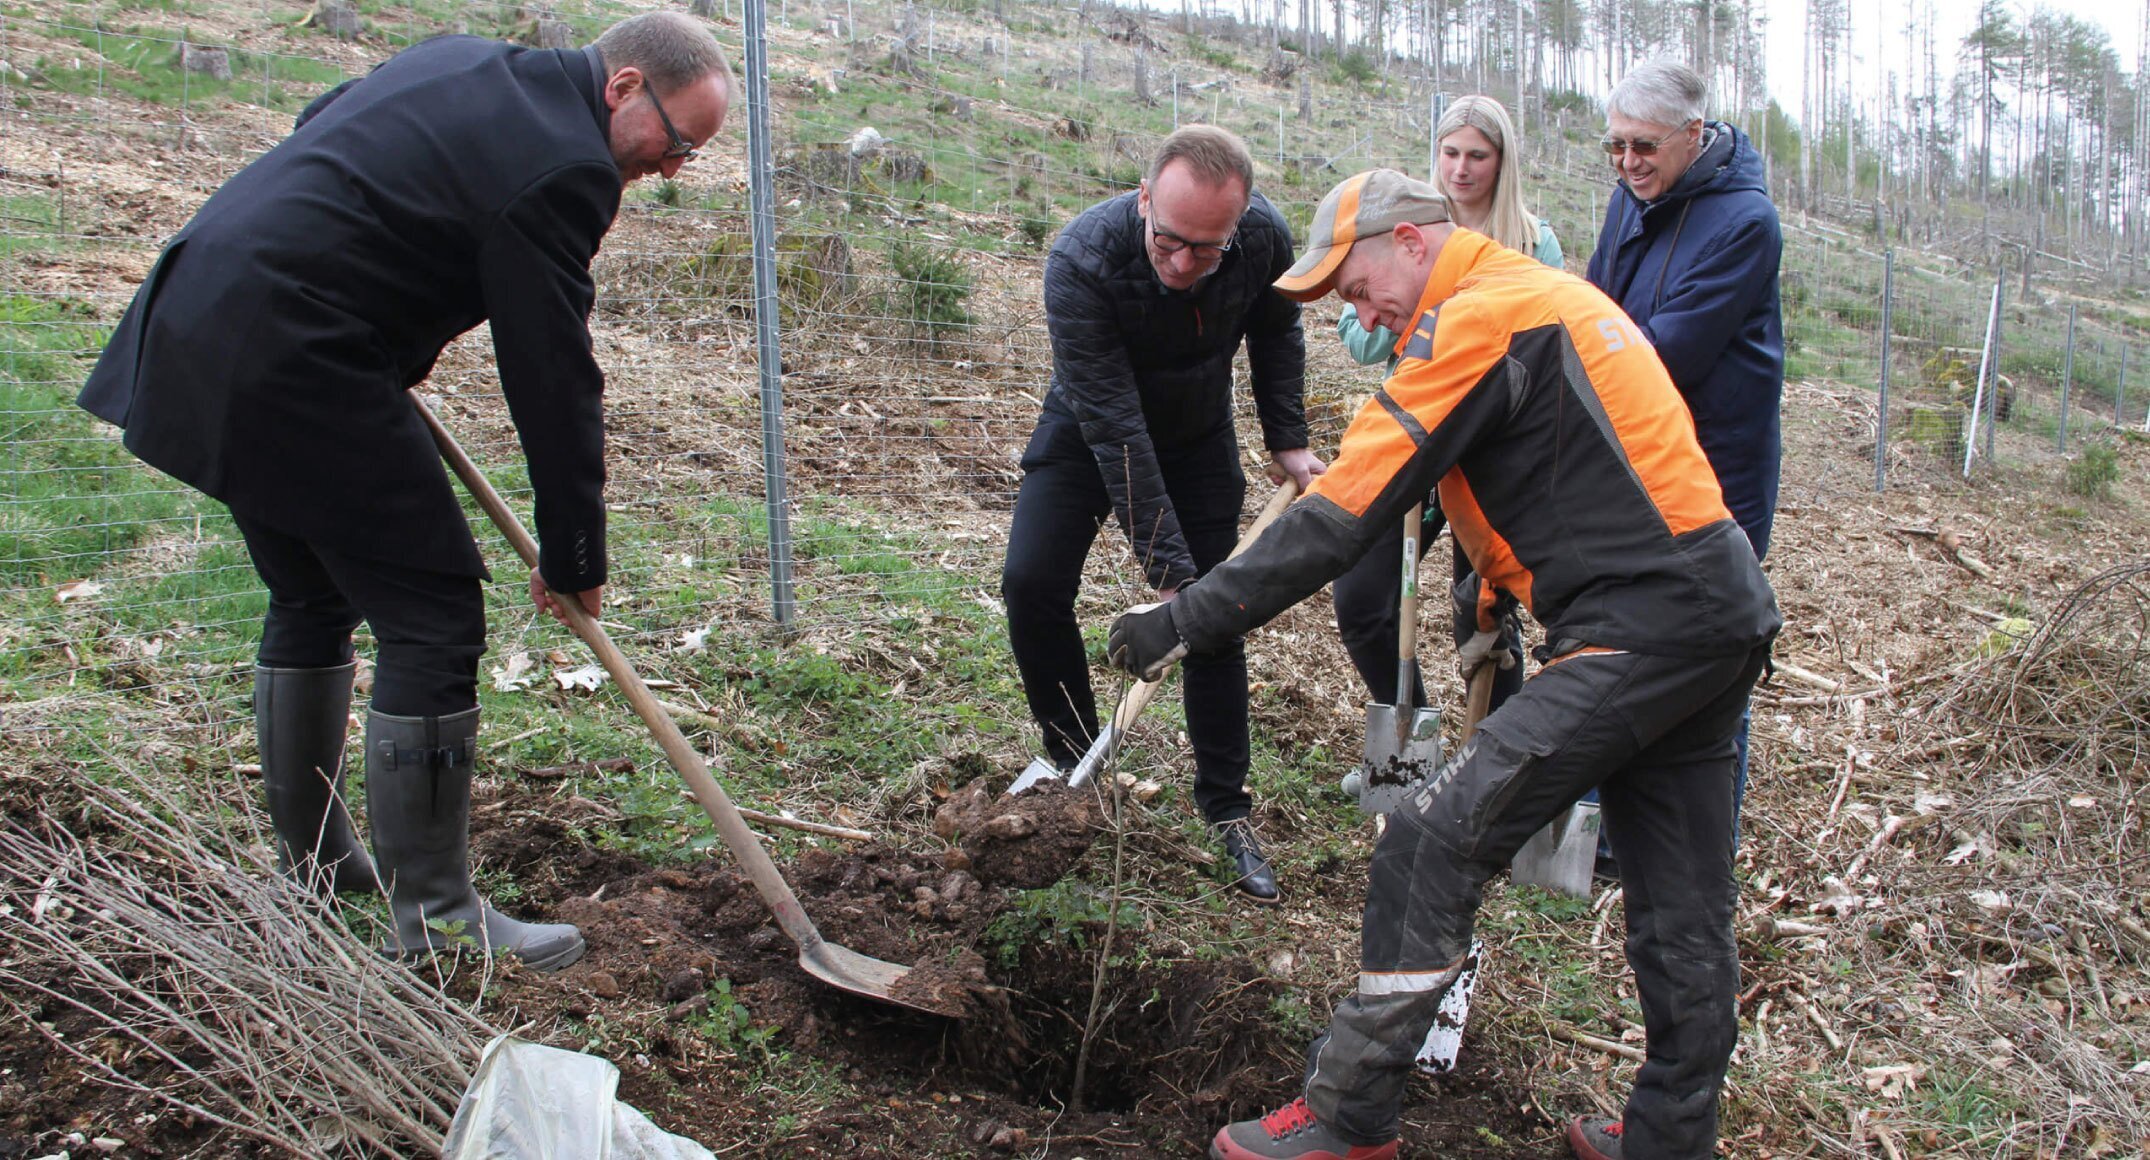 Wortmann Group plant duizenden bomen voor herstel bosgebied